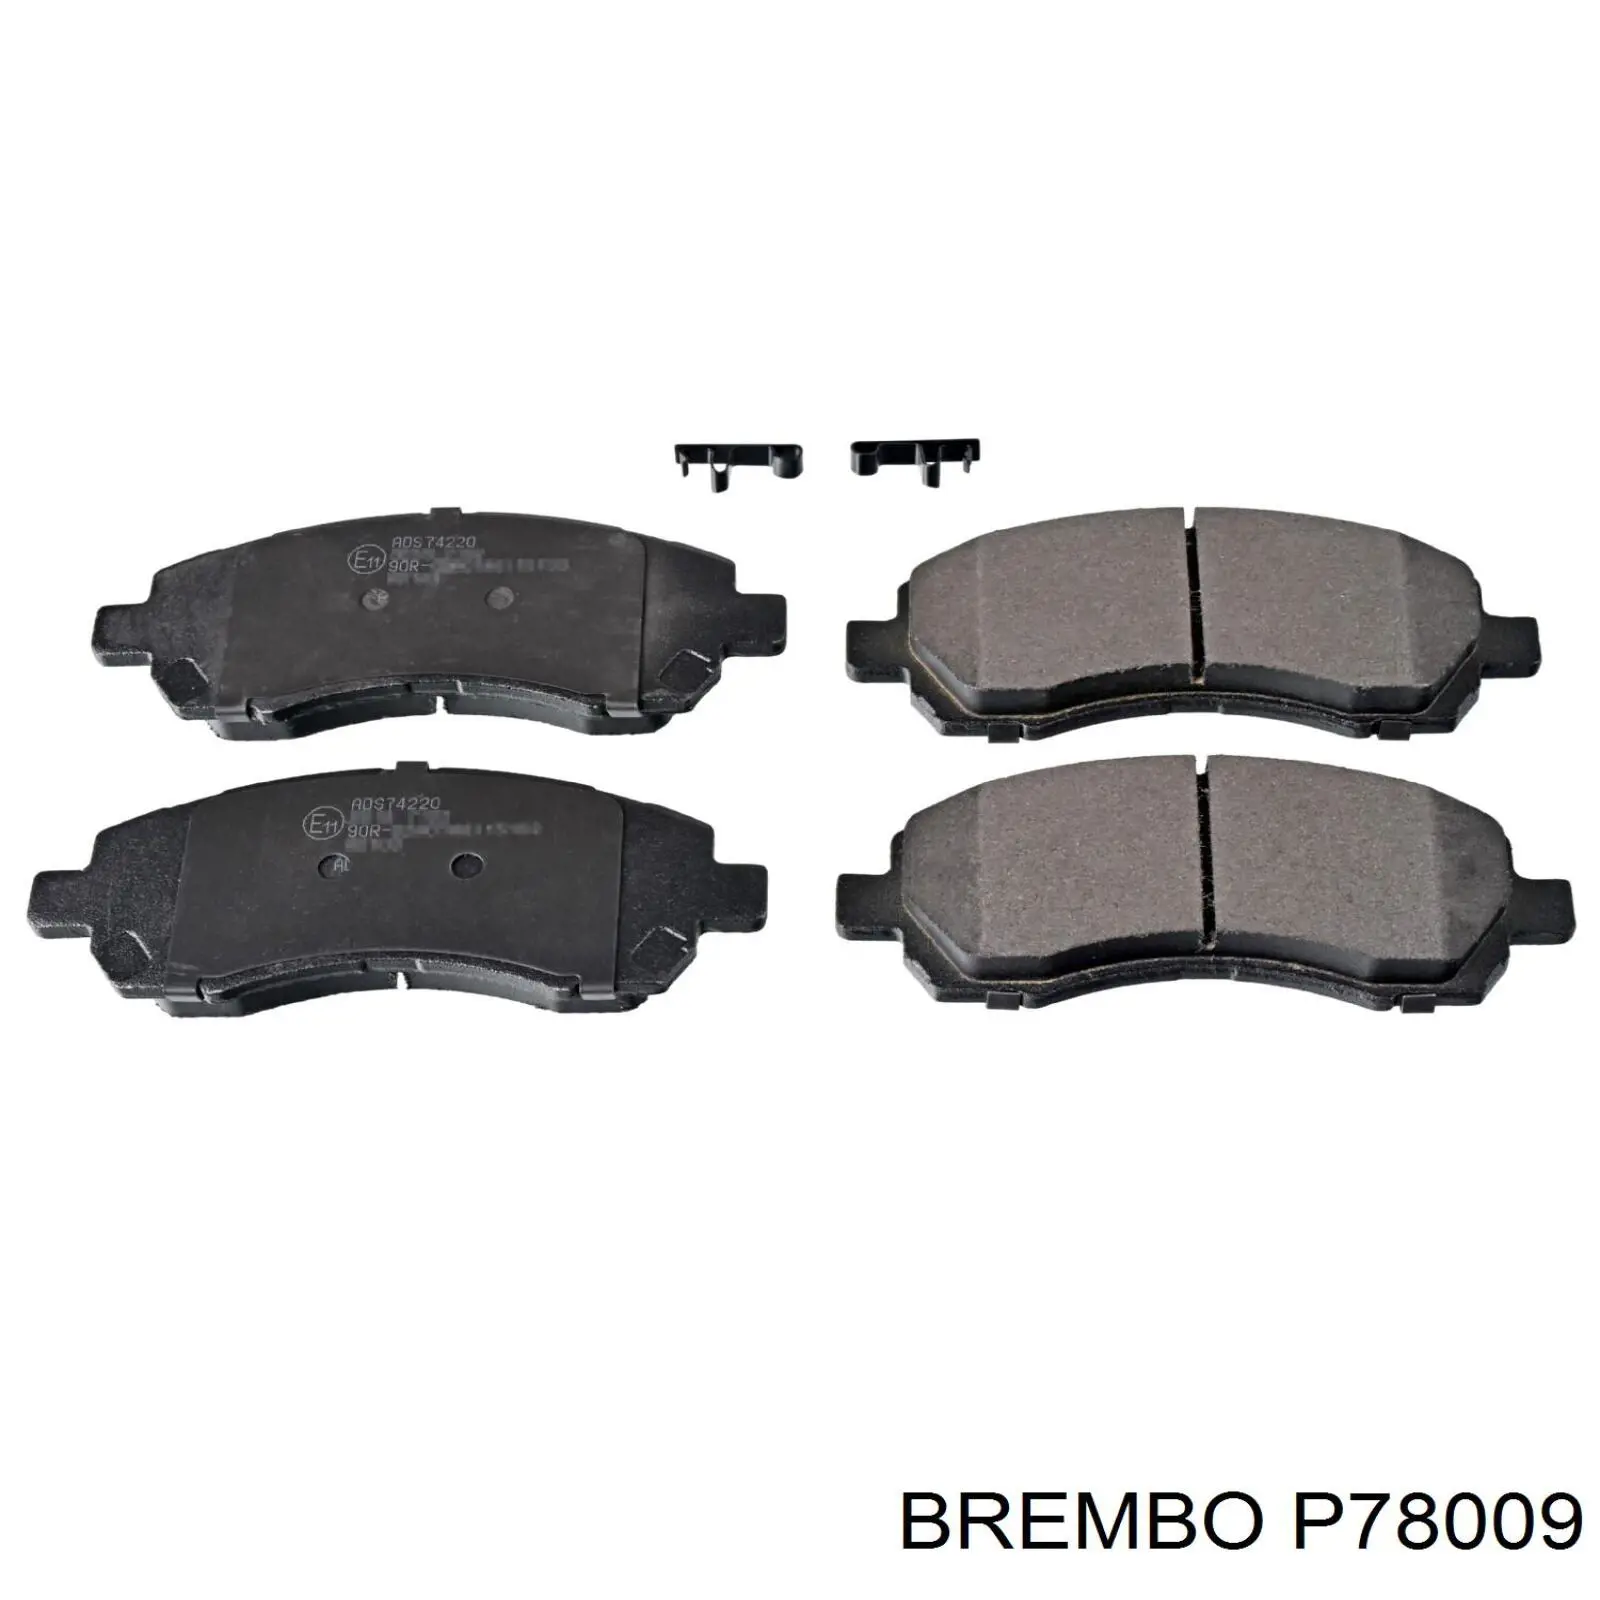 P 78 009 Brembo колодки тормозные передние дисковые